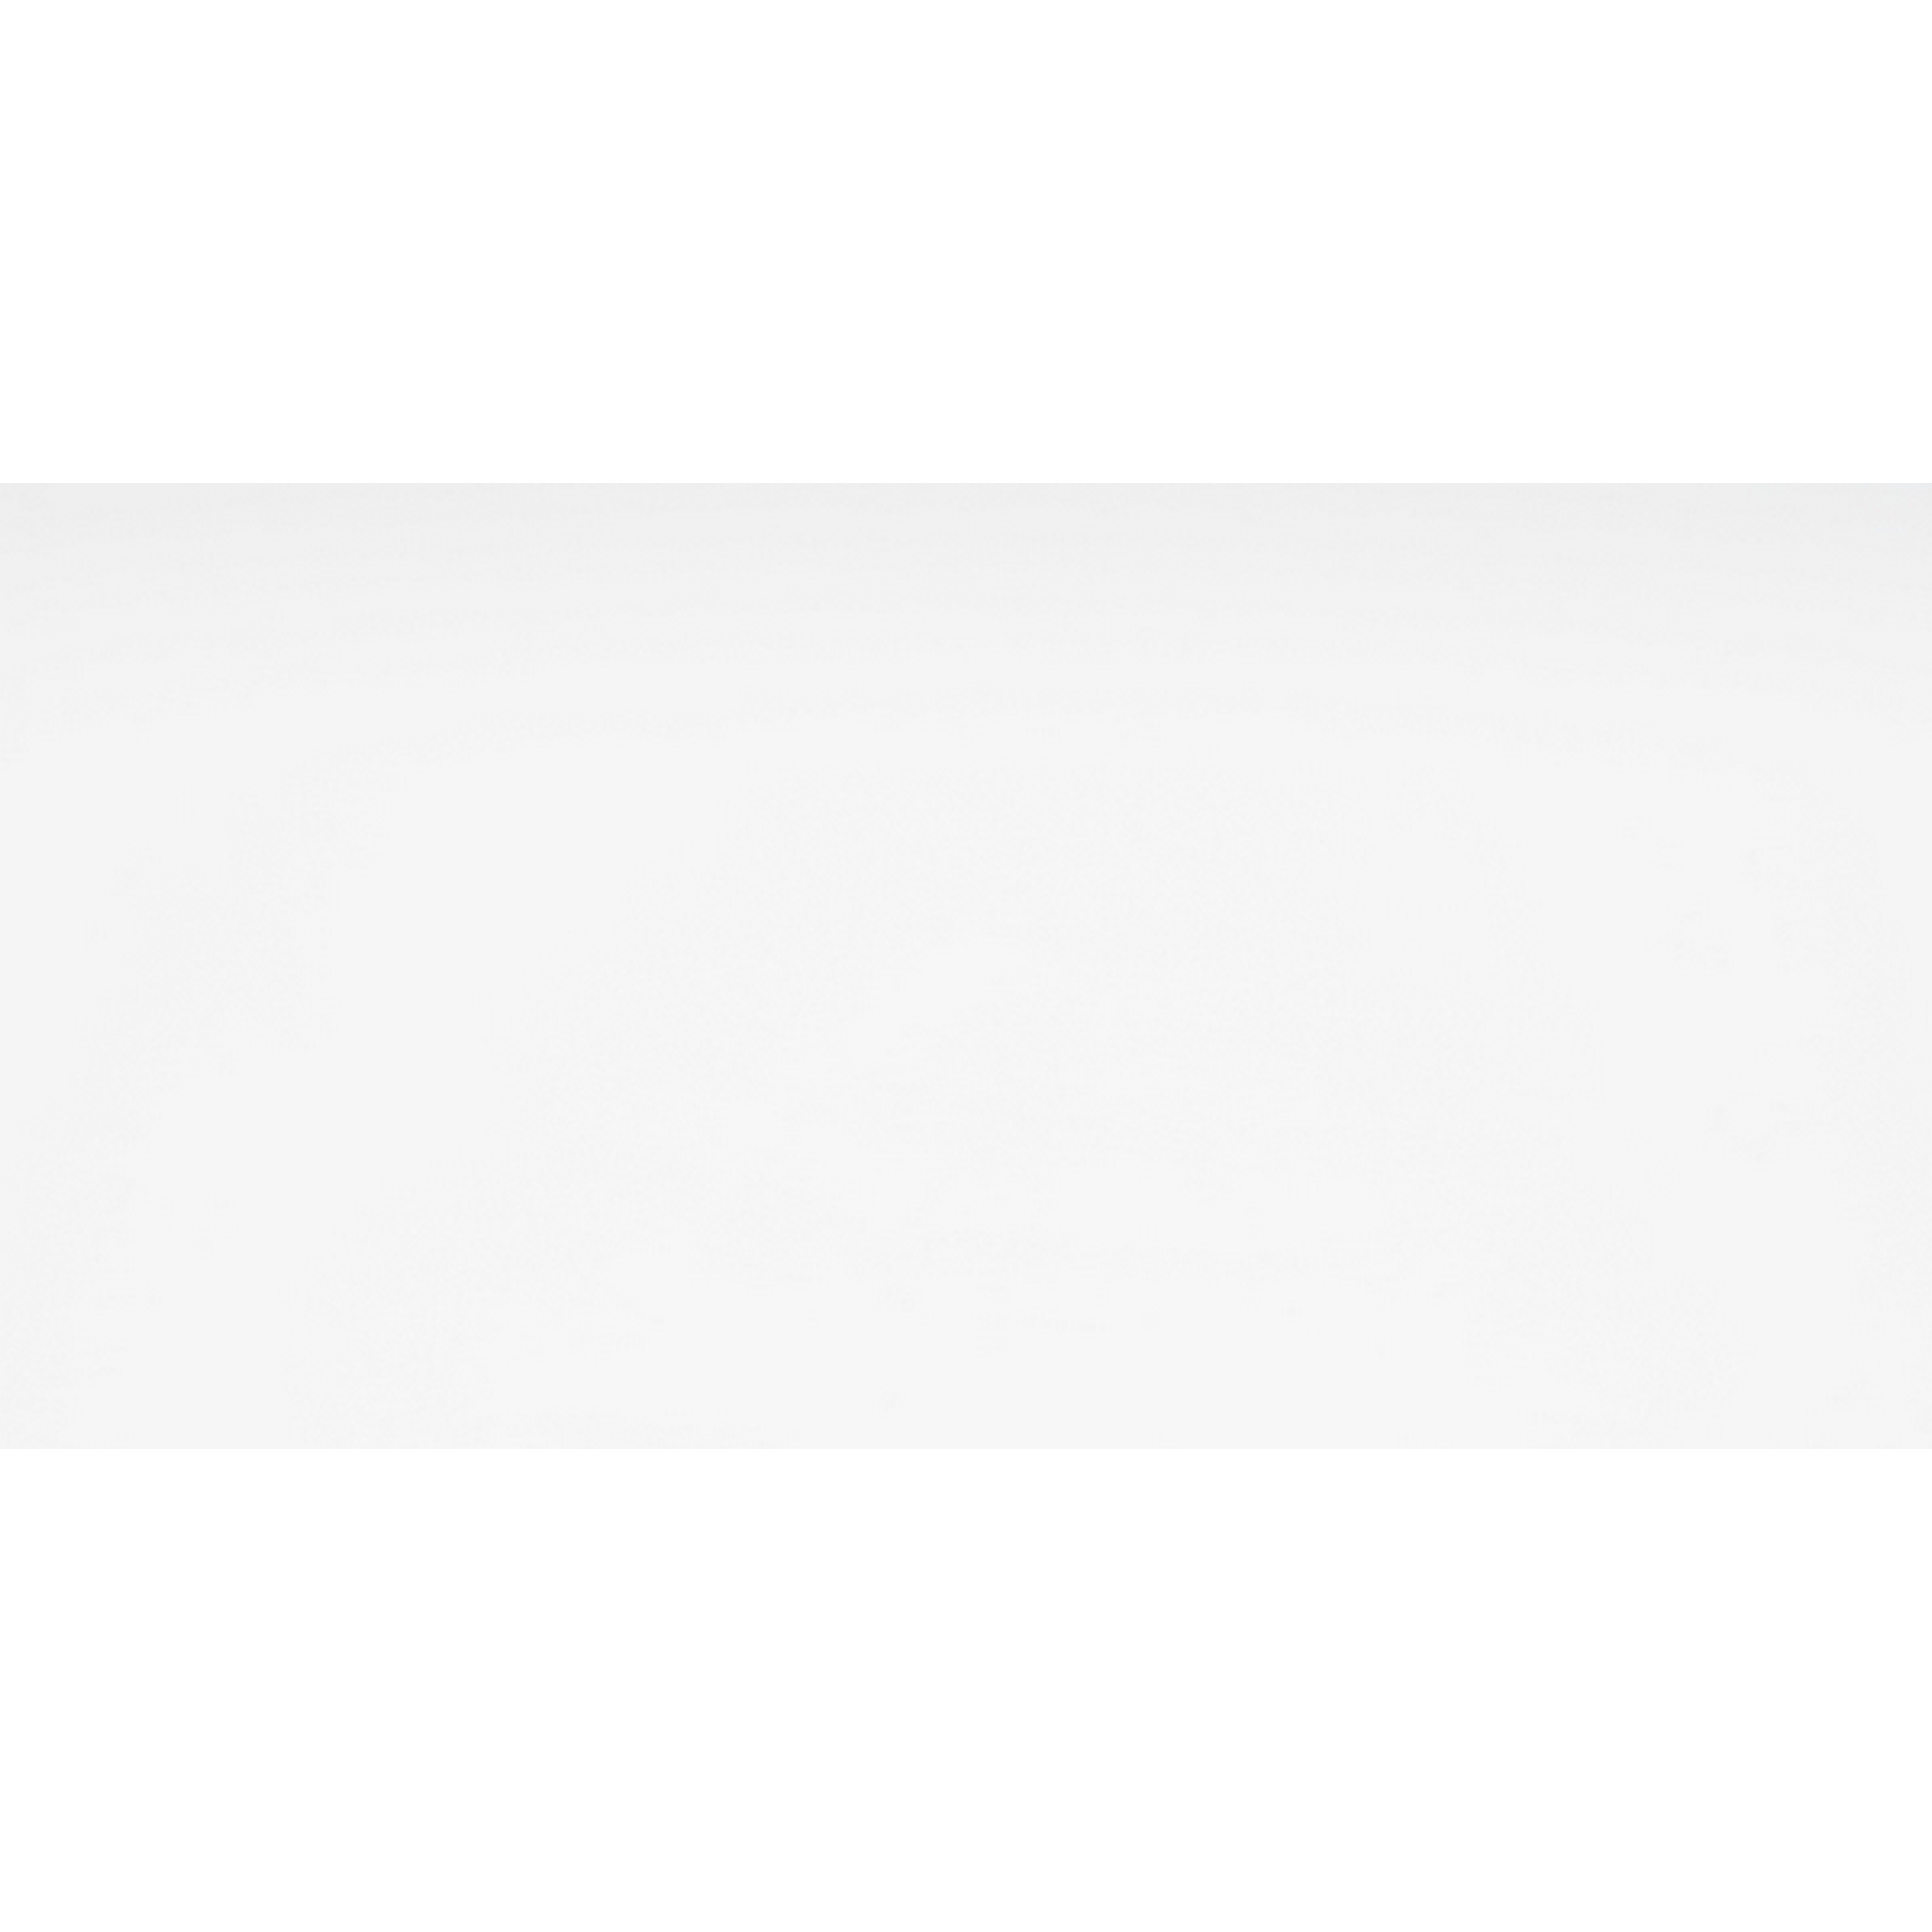 Wandfliese 'Weiß' Steingut uni glänzend 25 x 50 cm + product picture